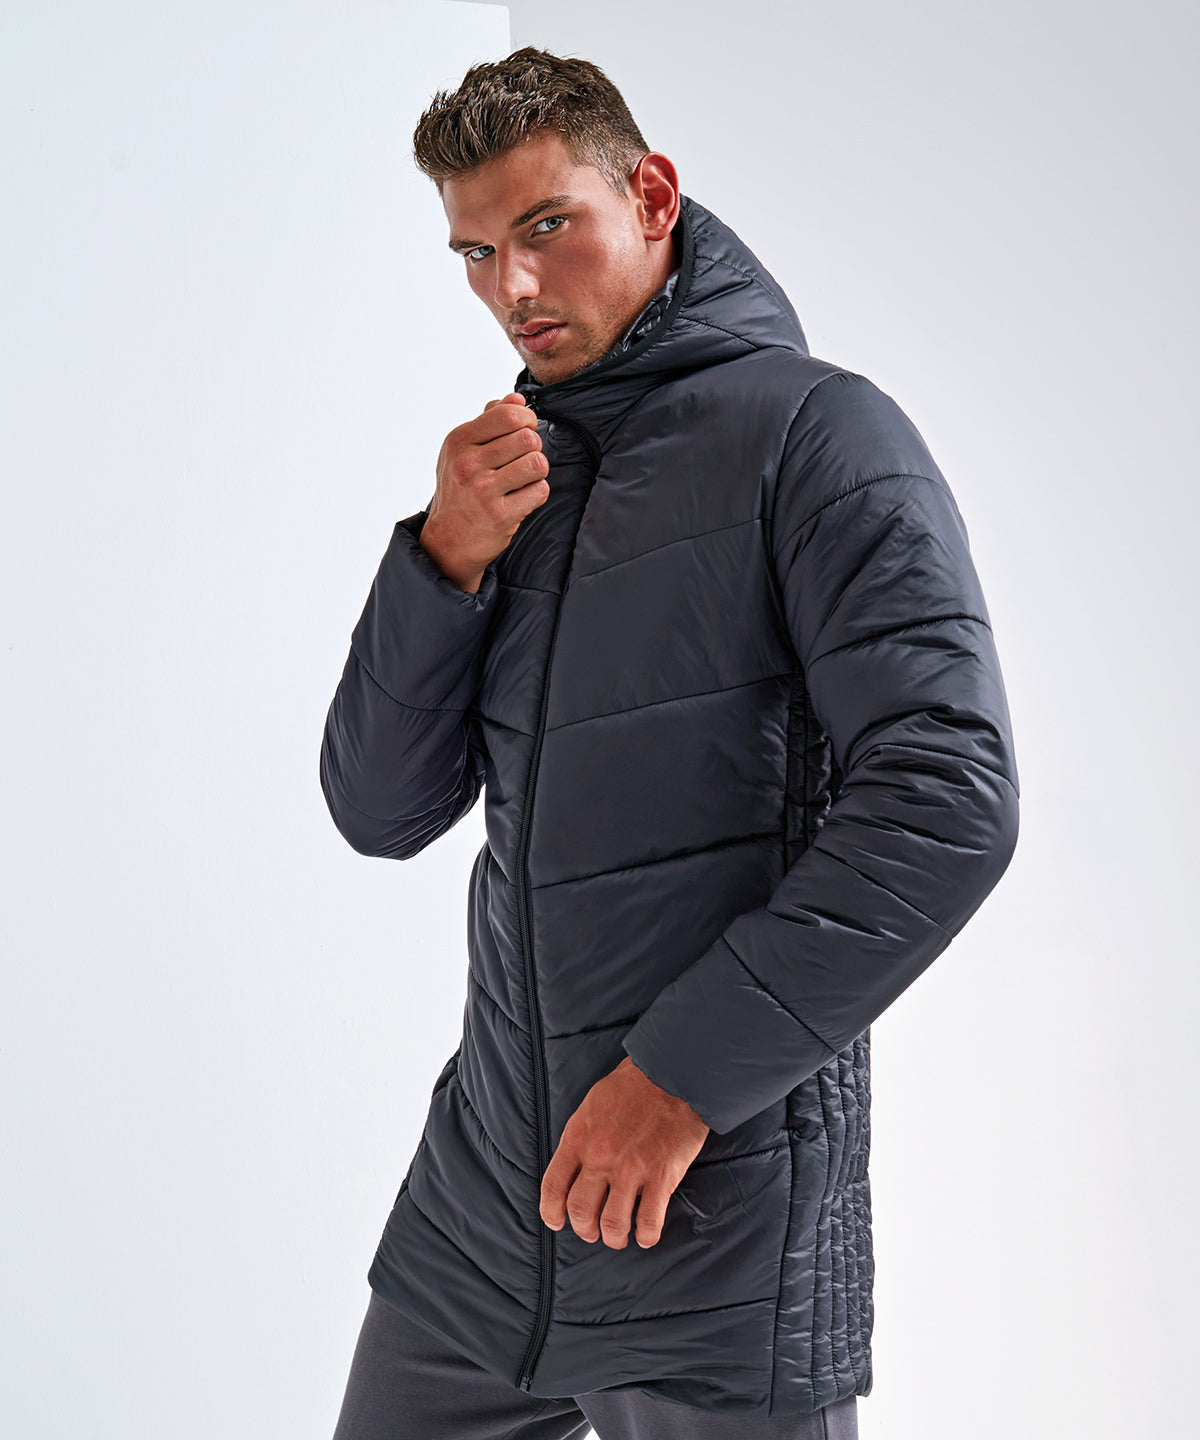 Men's TriDri® microlight longline jacket